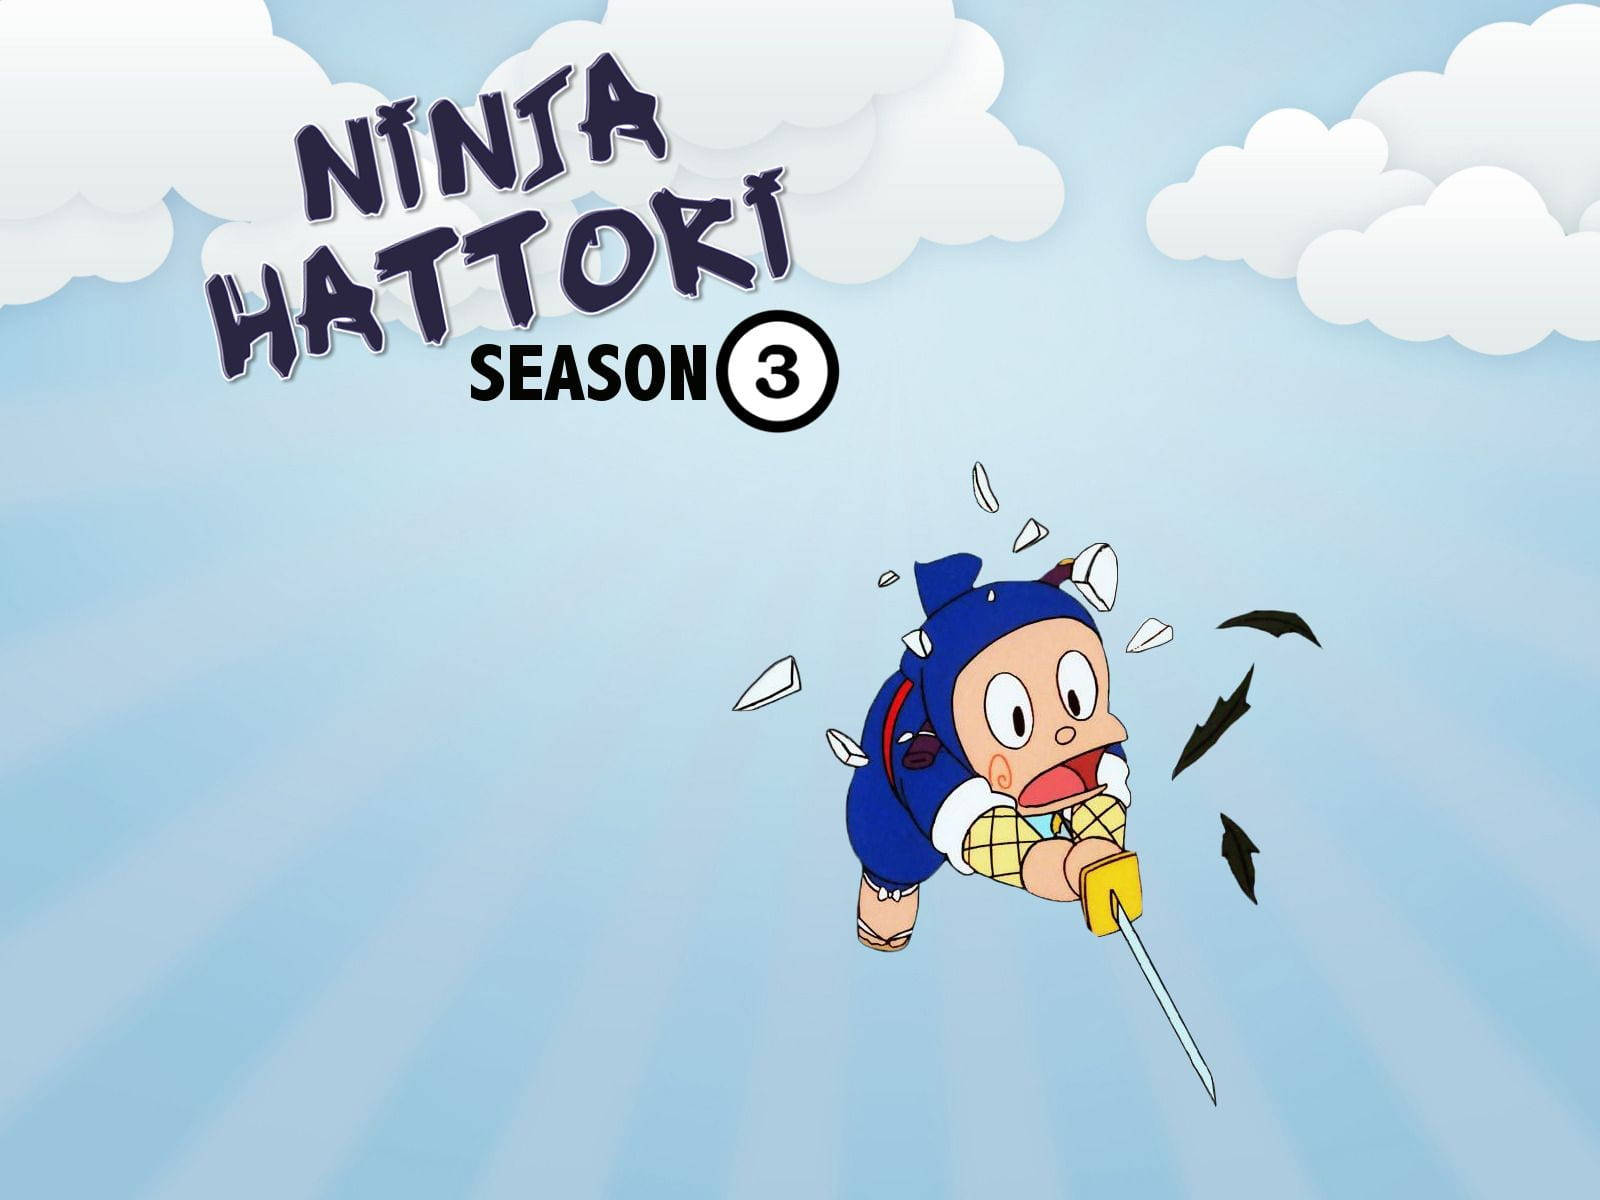 Ninja Hattori Season 3 Poster Background